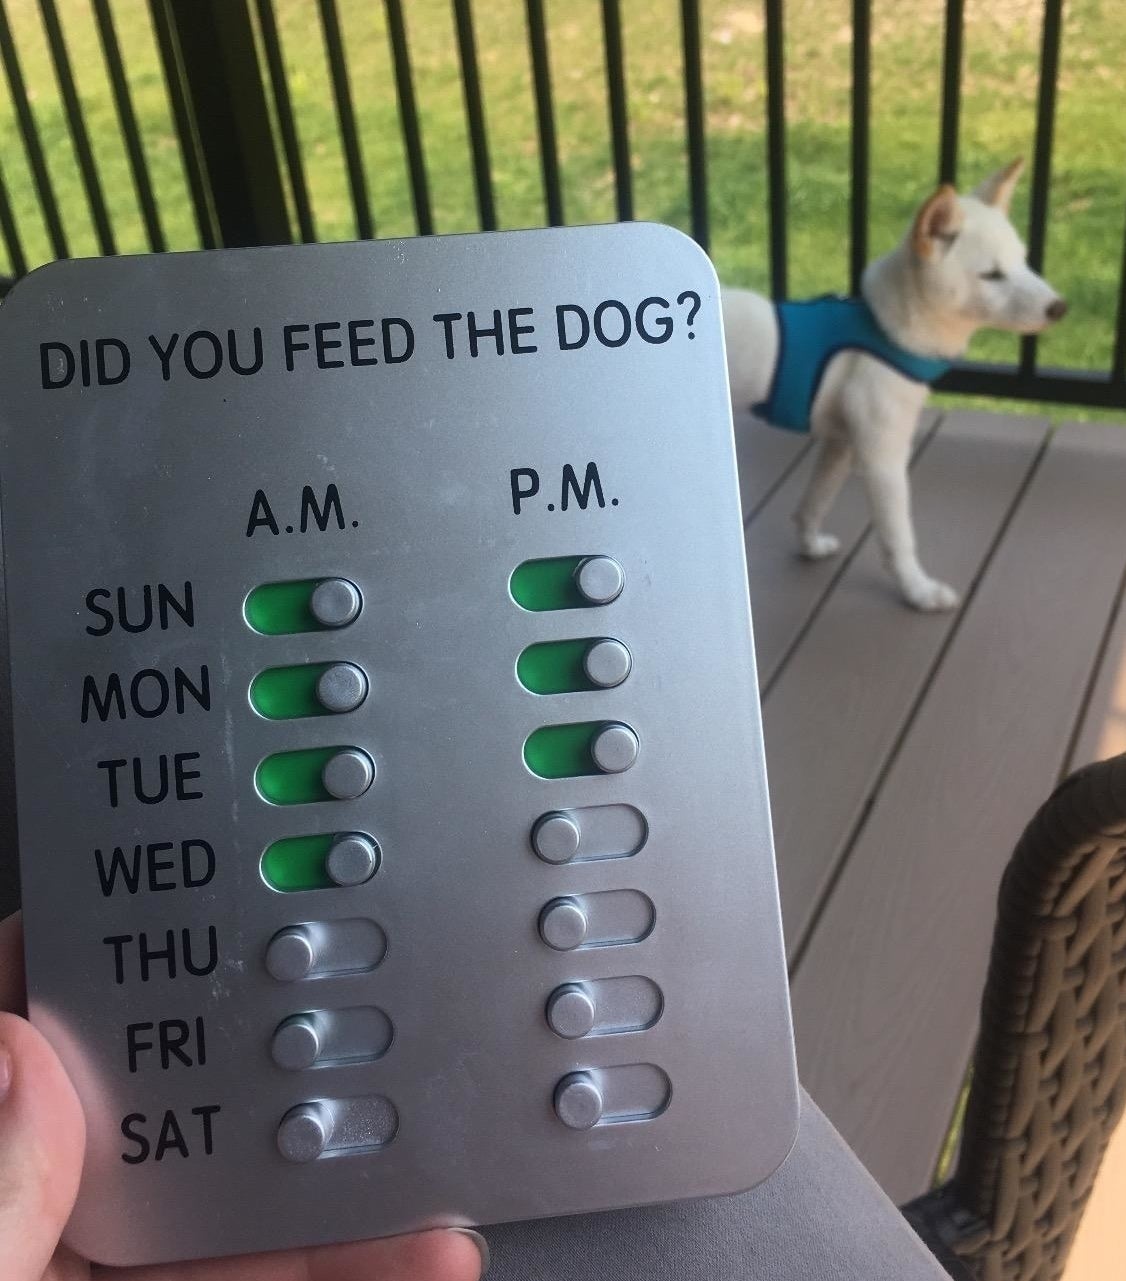 Amazon reviewer holding dog feeding tracking device